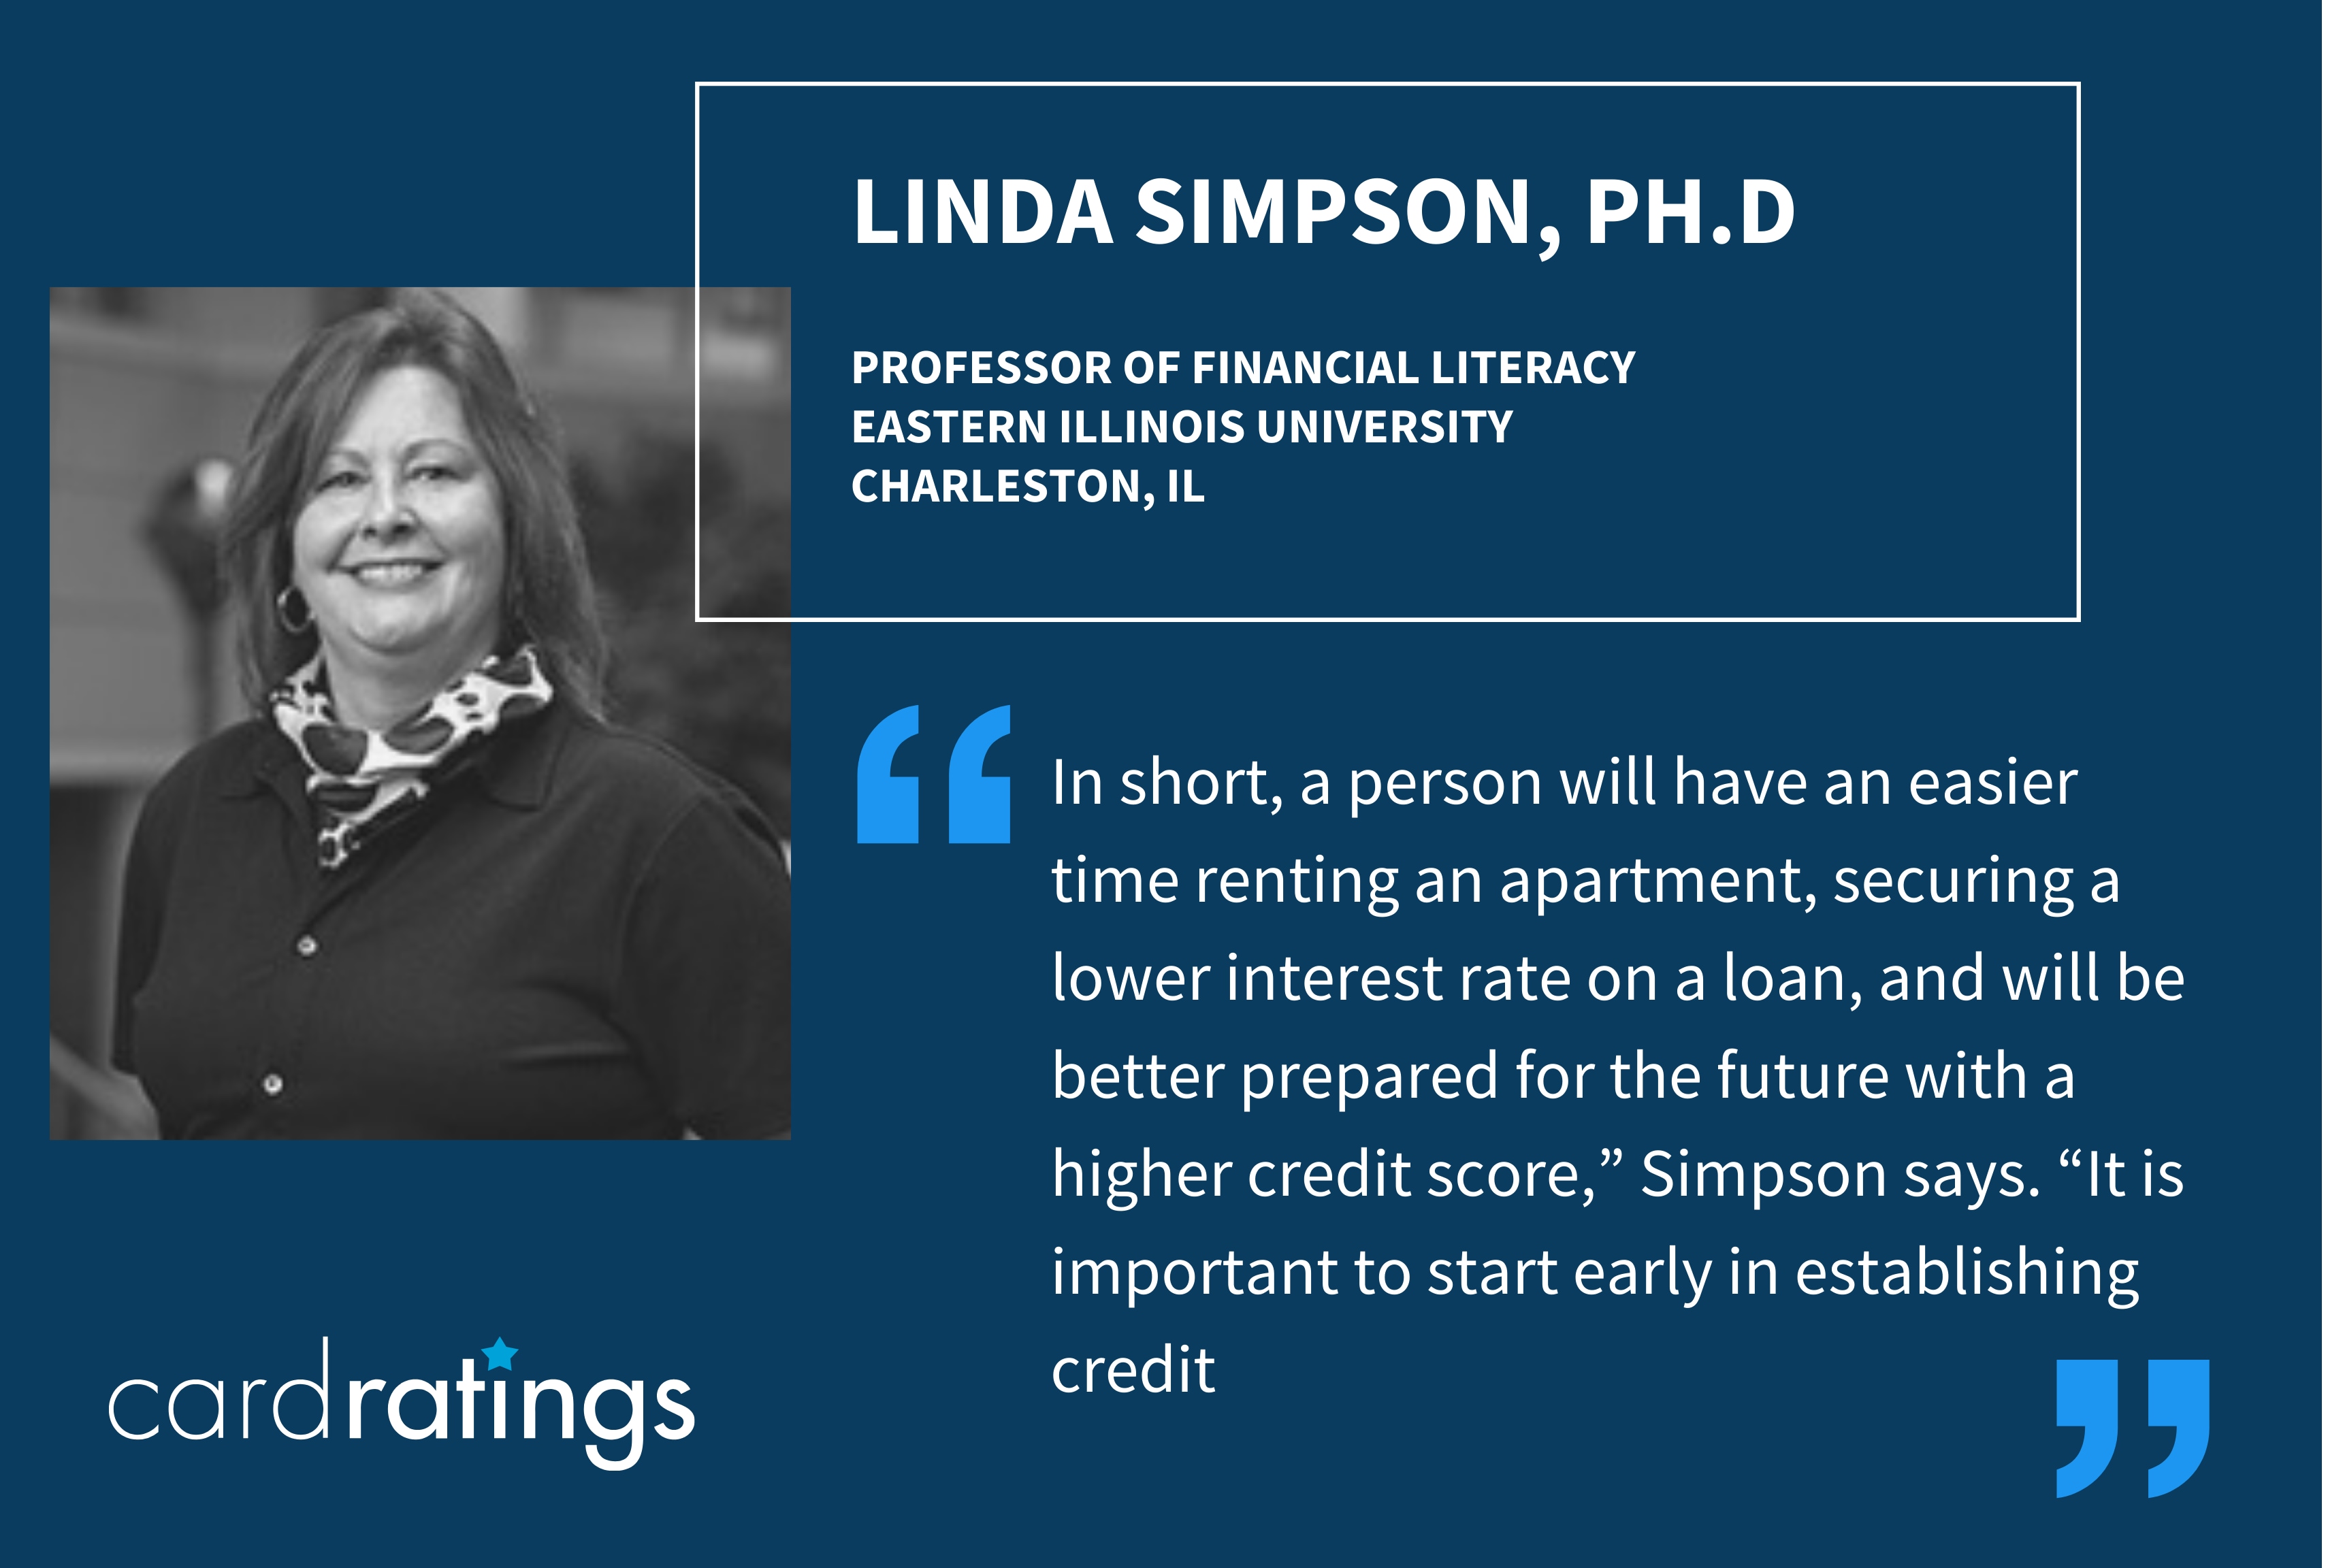 Professor Linda Simpson